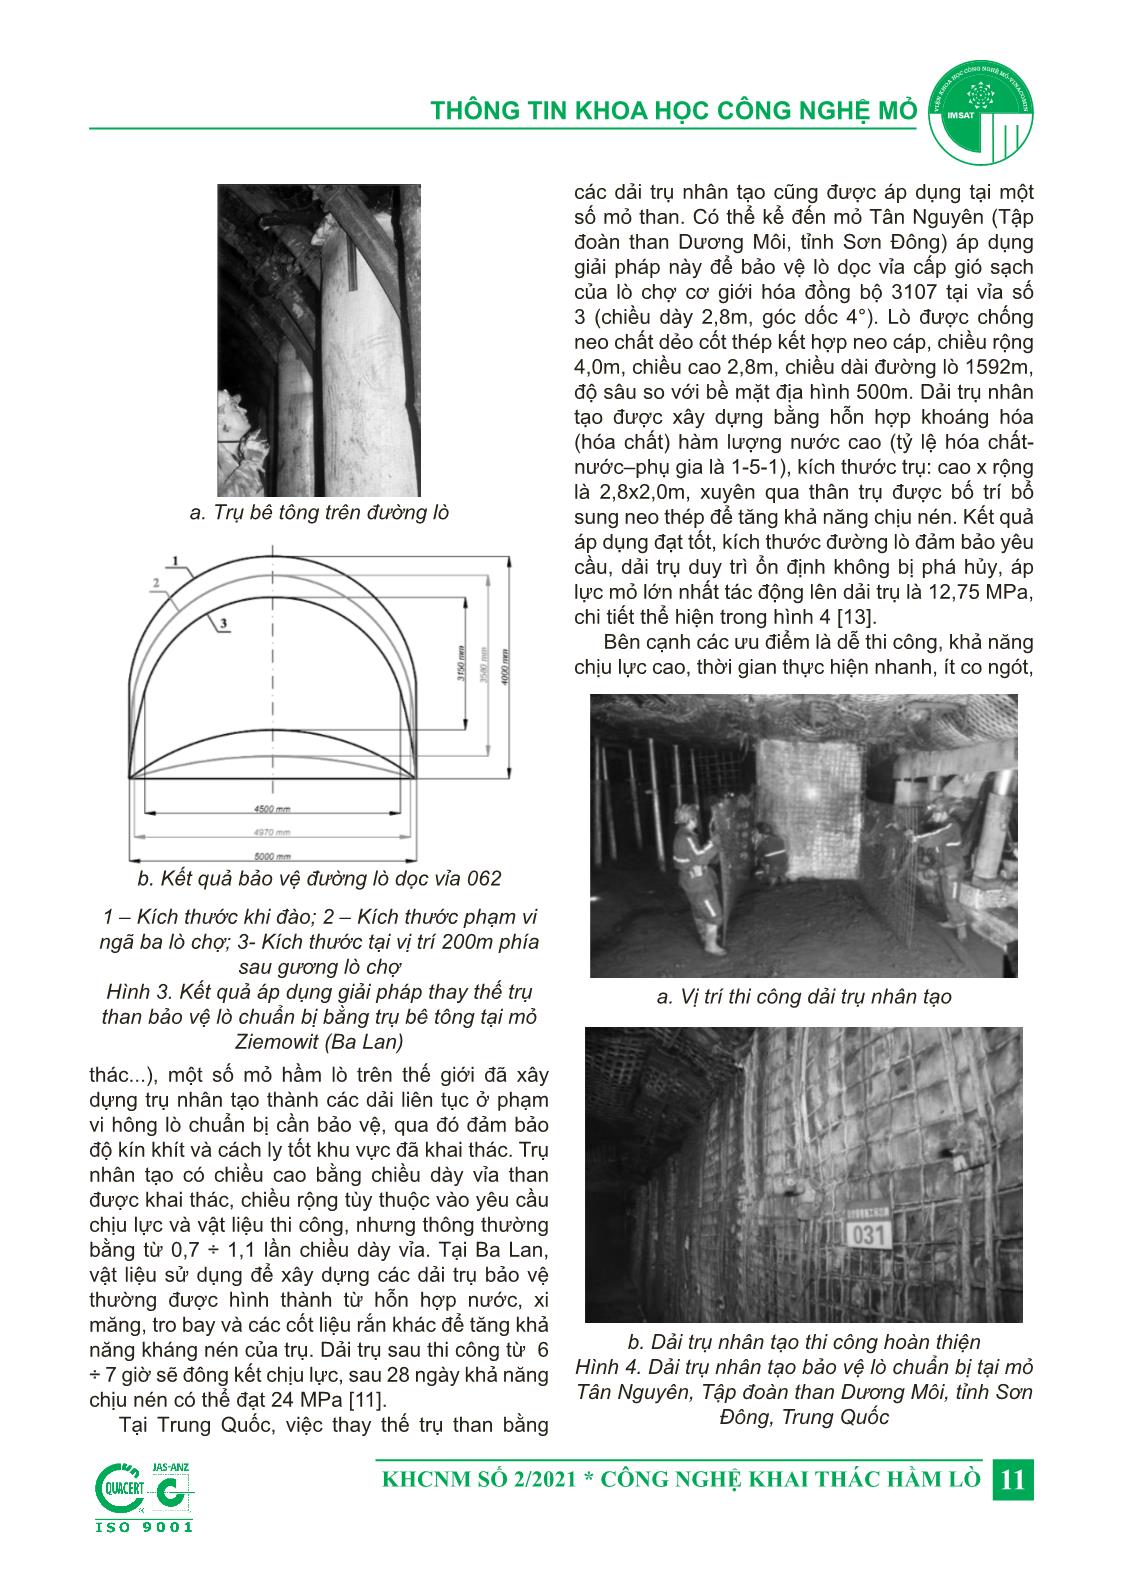 Nghiên cứu áp dụng thử nghiệm công nghệ sử dụng trụ nhân tạo bảo vệ lò chuẩn bị trong quá trình khai thác tại mỏ Khe Chàm III, Công ty than Khe Chàm - TKV trang 3